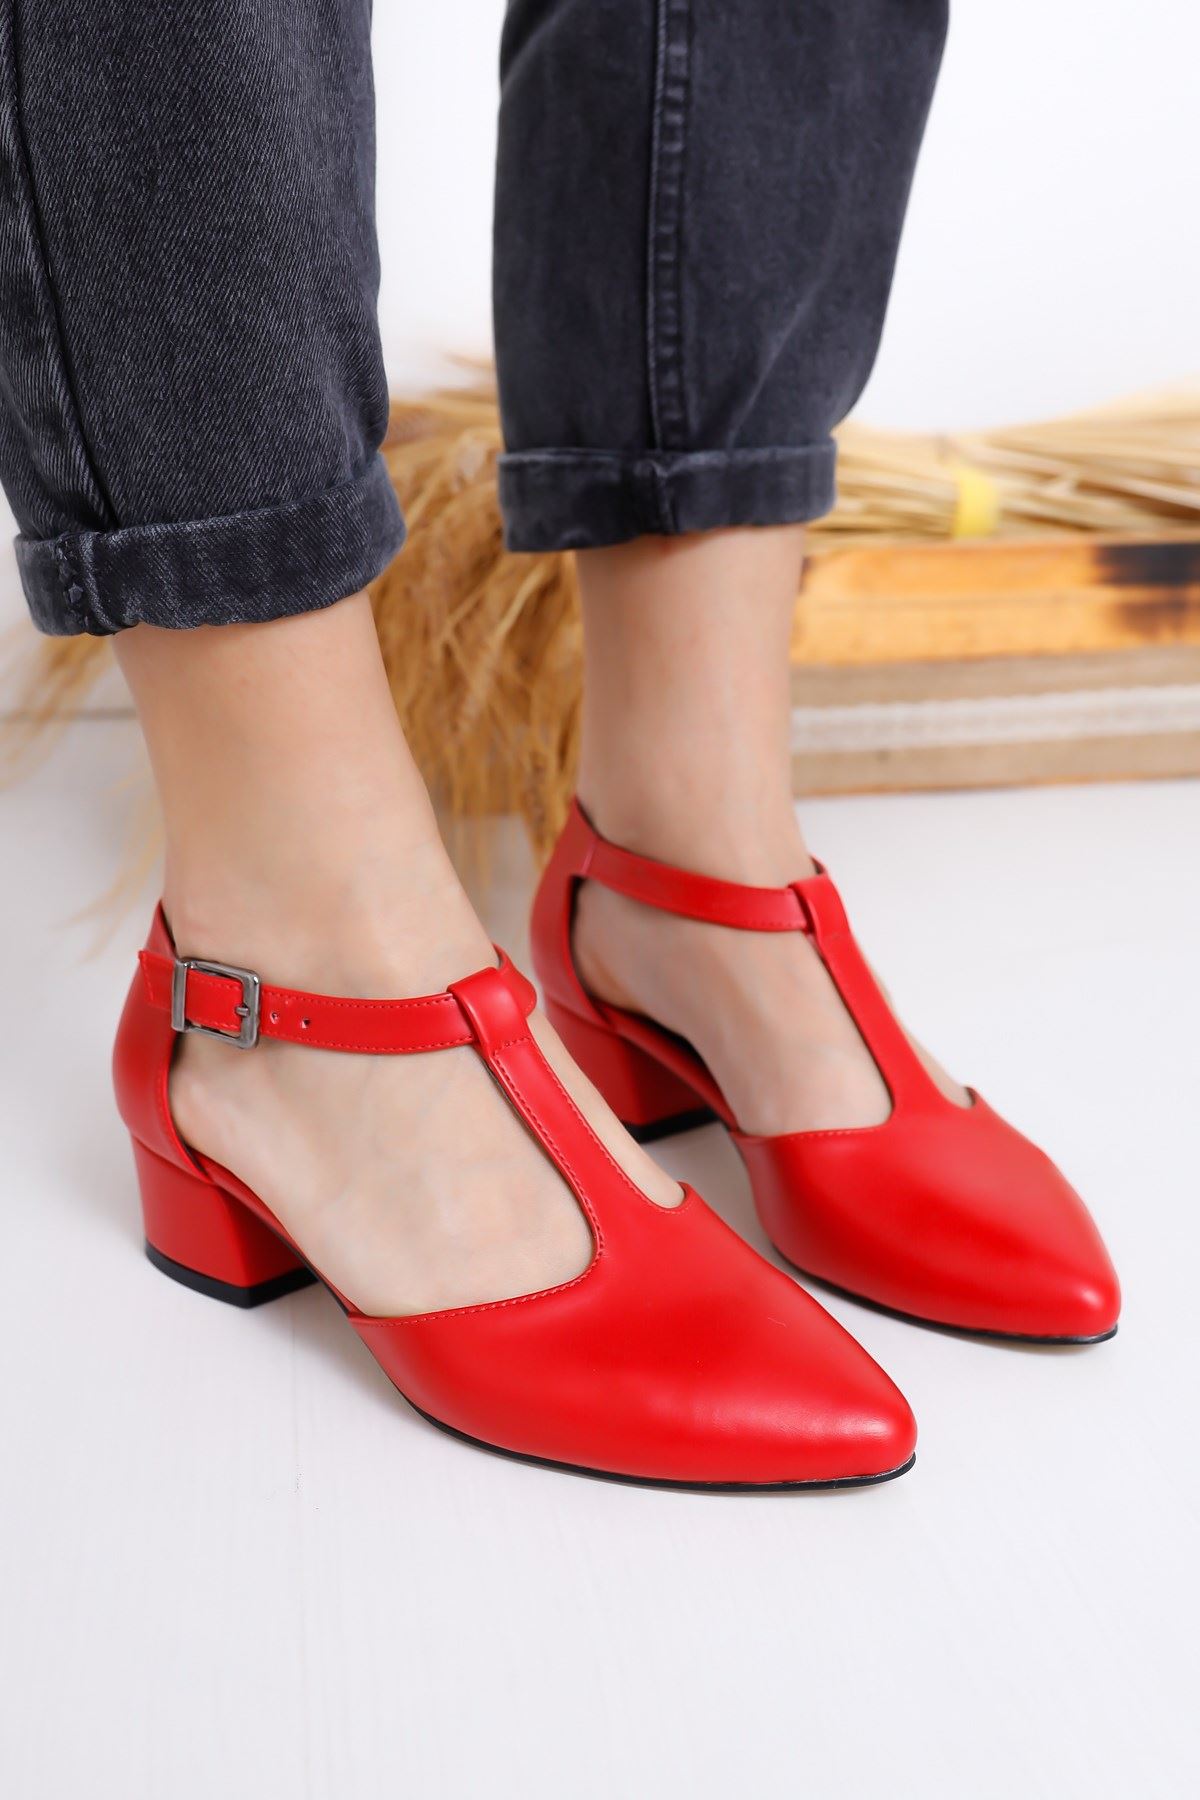 Jane Topuklu Kırmızı Cilt Ayakkabı